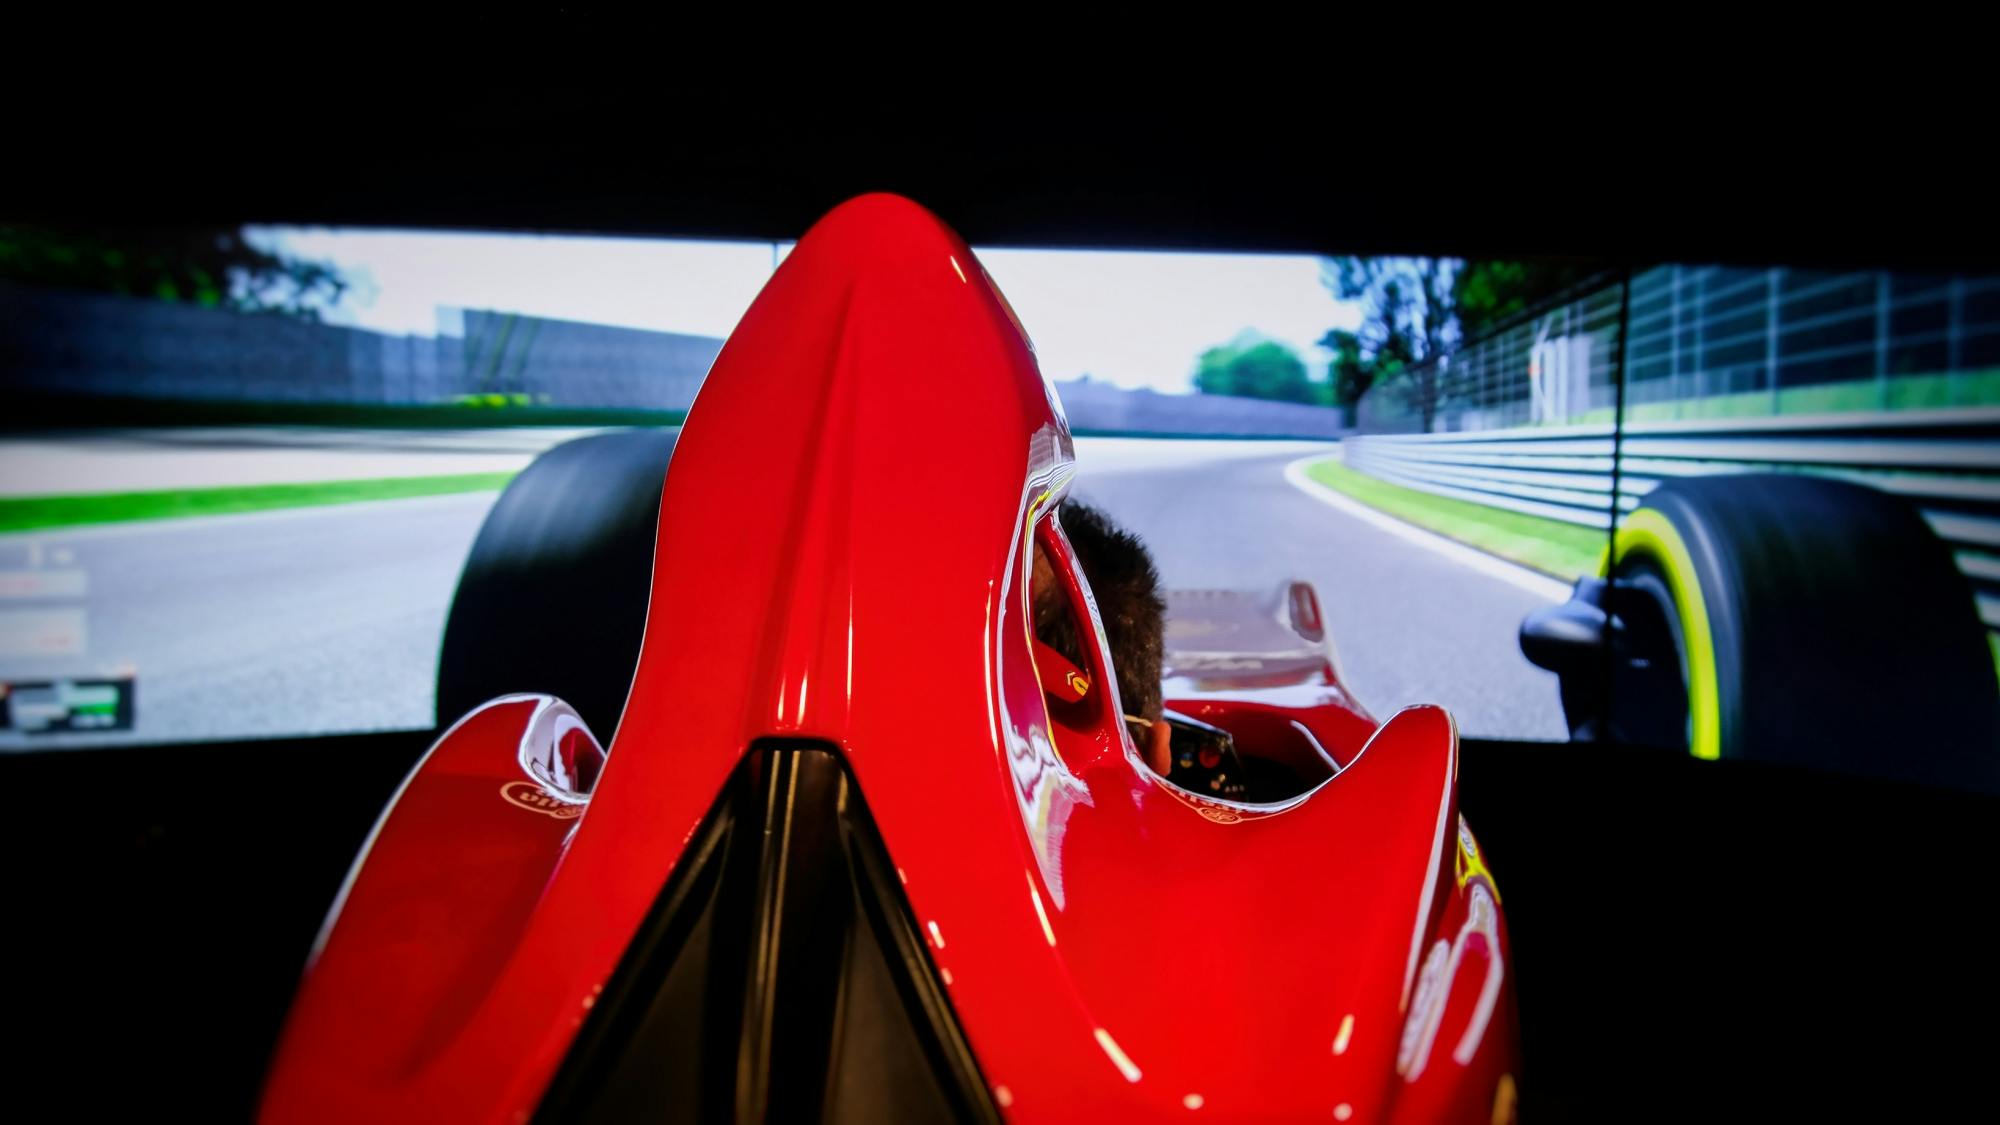 Boleto de entrada al Museo Ferrari en Maranello y Simulador